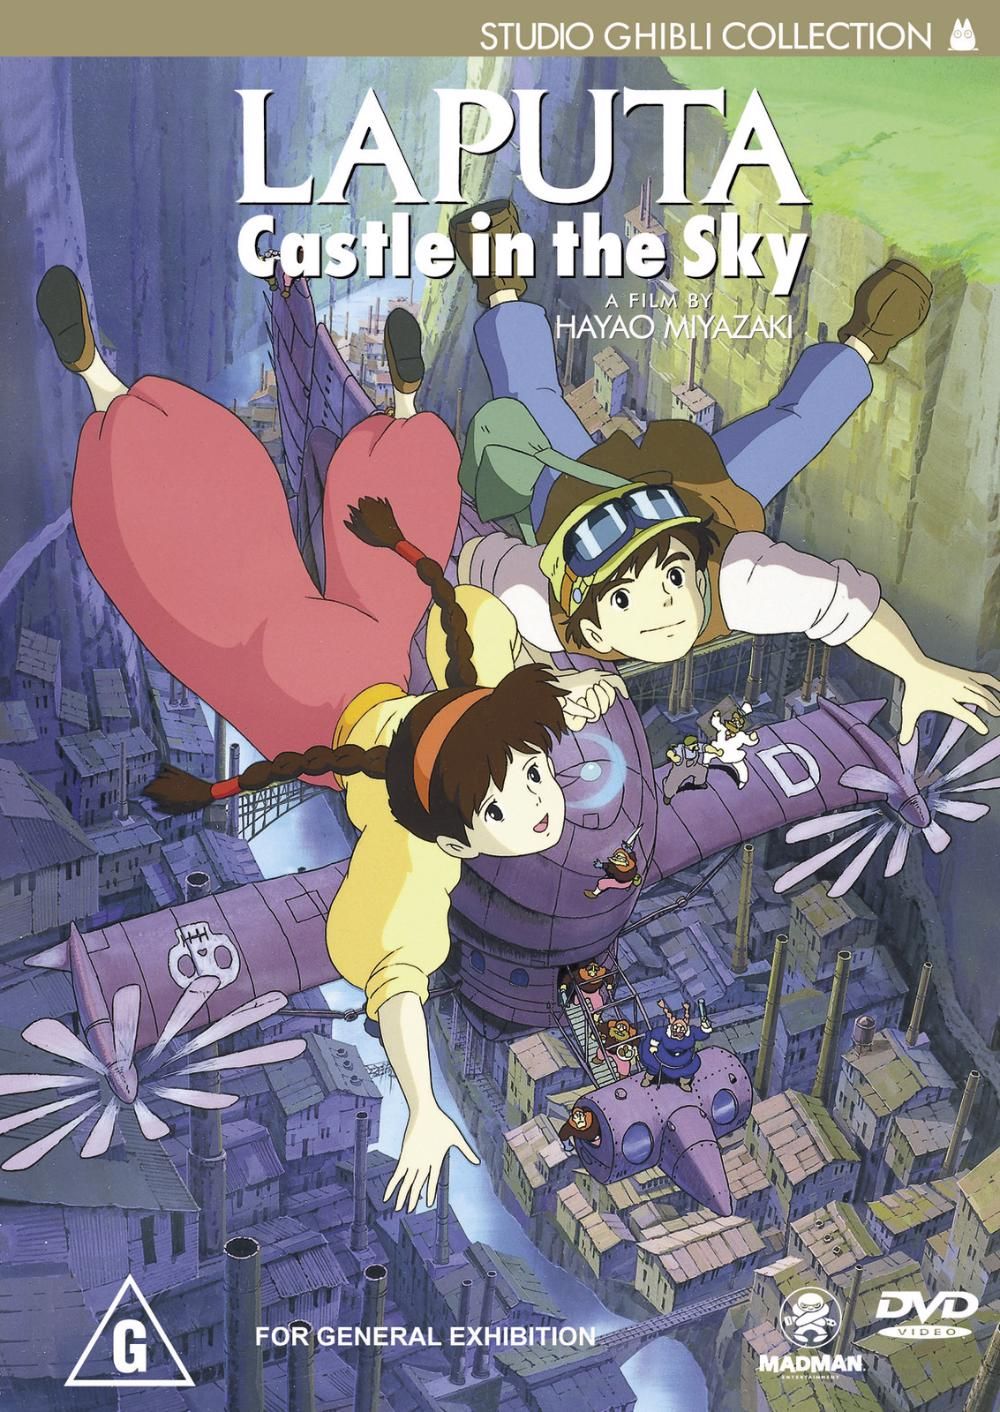 Castle in the Sky | Ghibli Wiki | Fandom